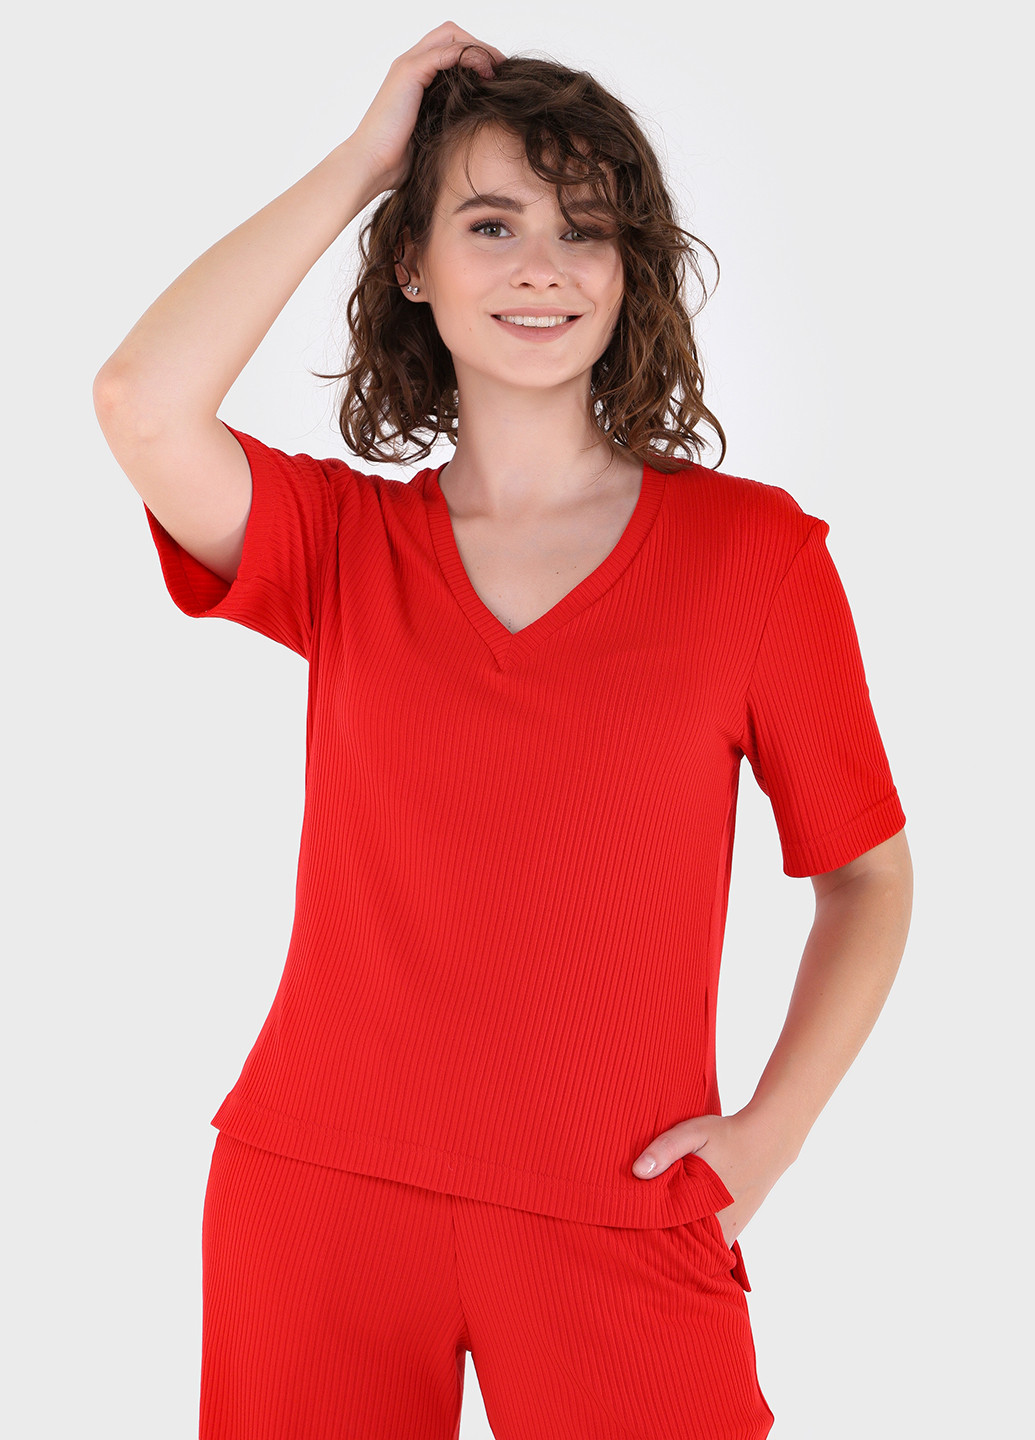 Червона літня легка футболка жіноча у рубчик 800000025 з коротким рукавом Merlini Корунья